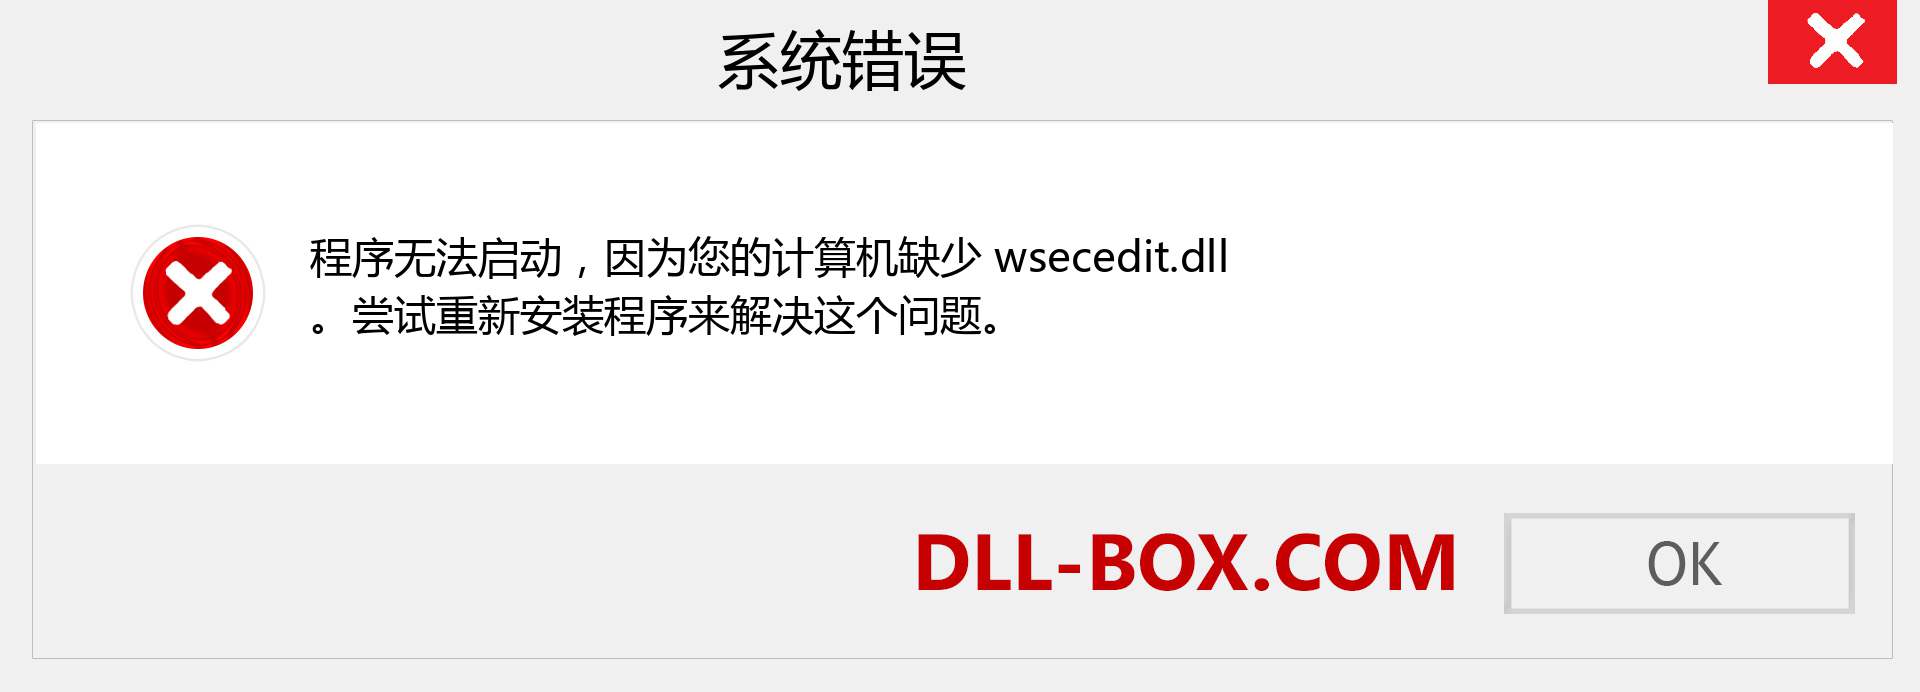 wsecedit.dll 文件丢失？。 适用于 Windows 7、8、10 的下载 - 修复 Windows、照片、图像上的 wsecedit dll 丢失错误